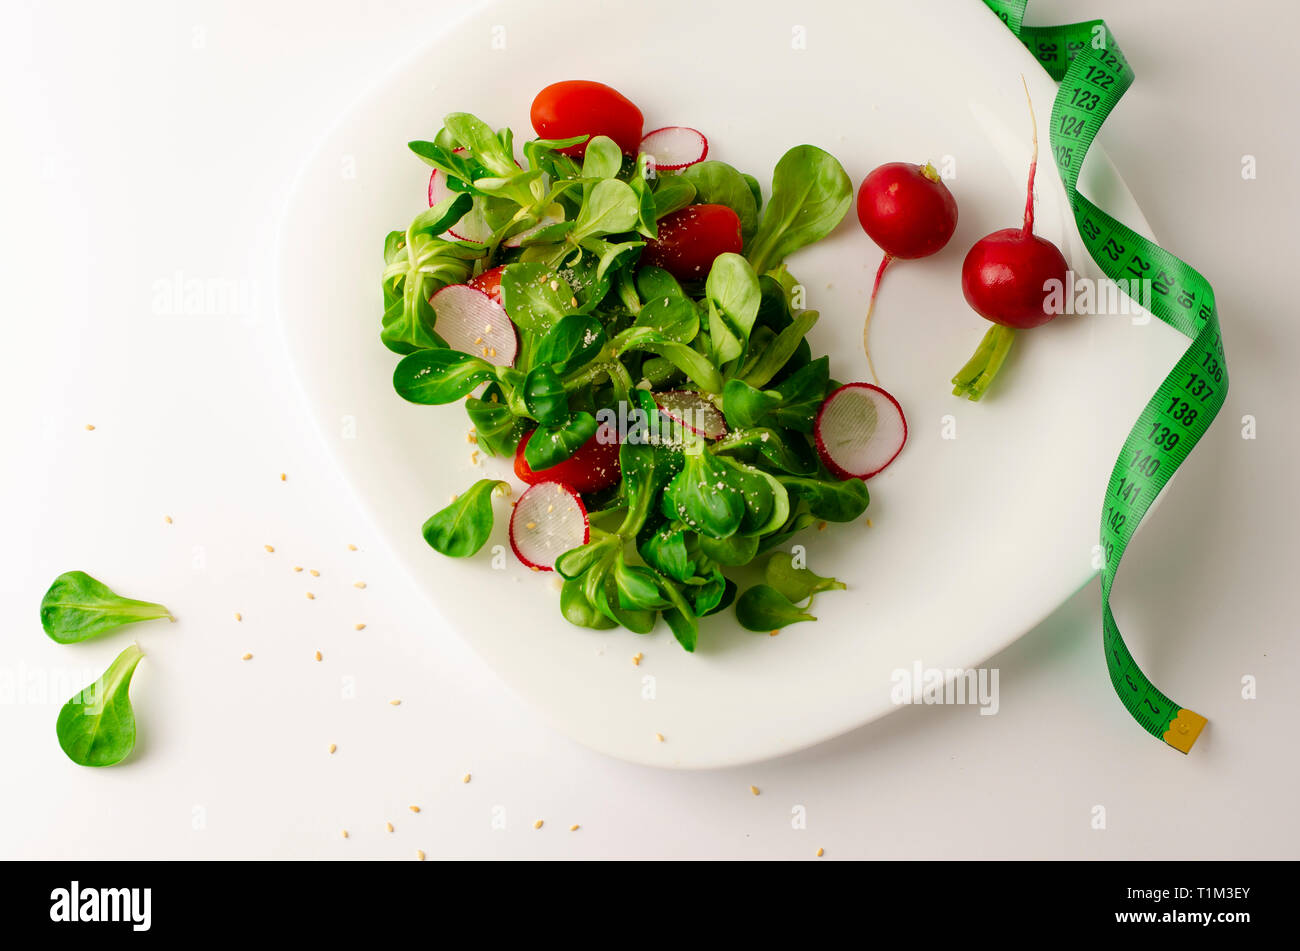 Salade de légumes frais de radis, tomates et salade de maïs ou Valerianella locusta. Close up sur plaque blanche et ruban à mesurer. Régime, la perte de poids Banque D'Images